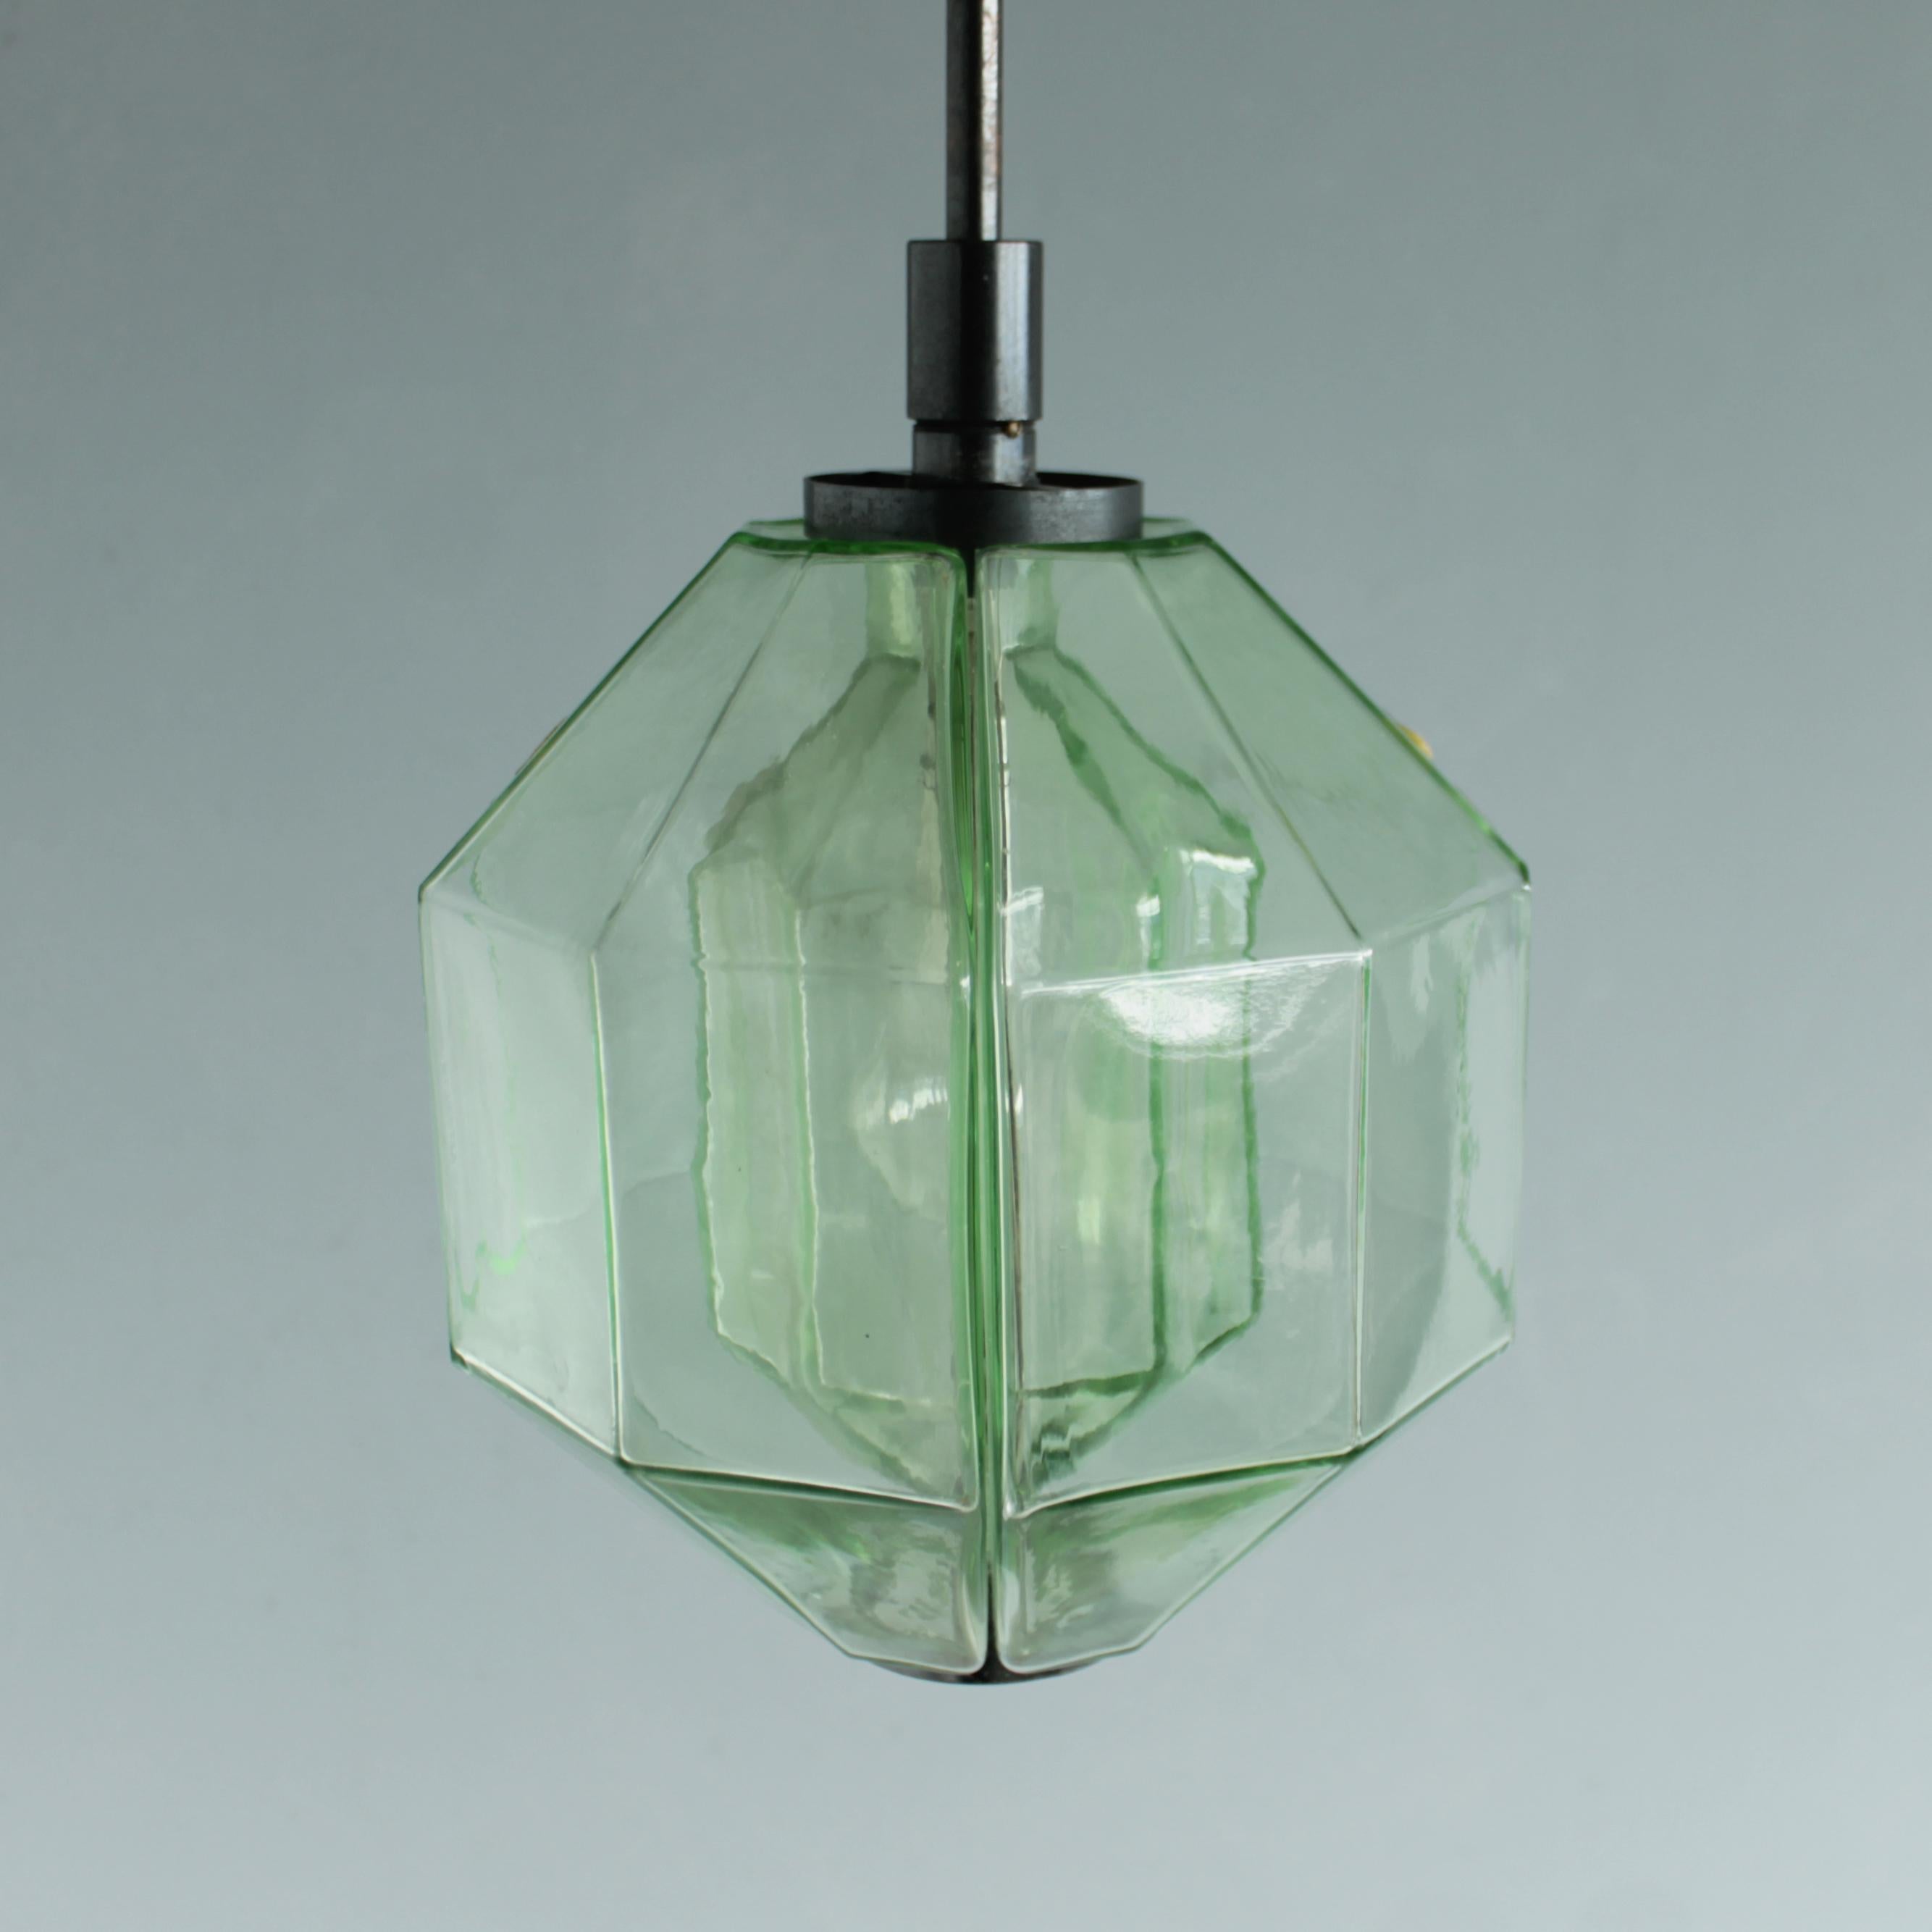 Mid-20th Century Italian Pendant Lamp by Vinicio Vianello for Vistosi Murano